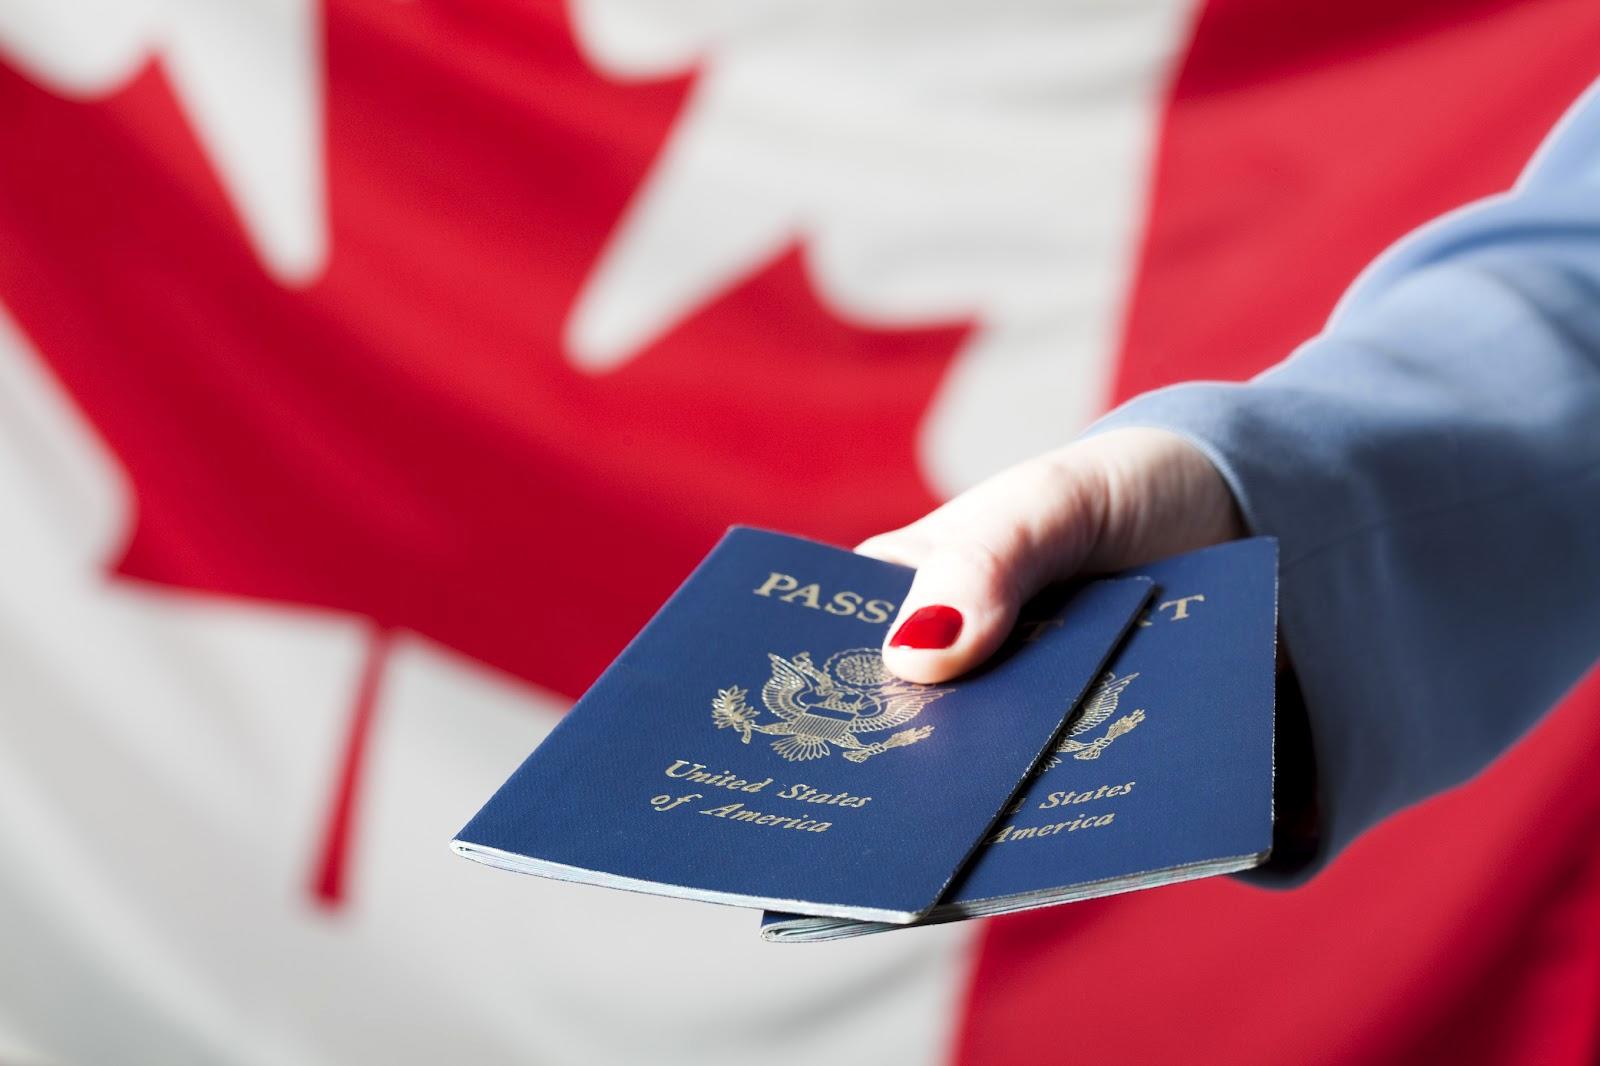 اگر قصد مهاجرت دارید بخوانید/ کانادا دیگر برای مهاجرت مناسب نیست؟